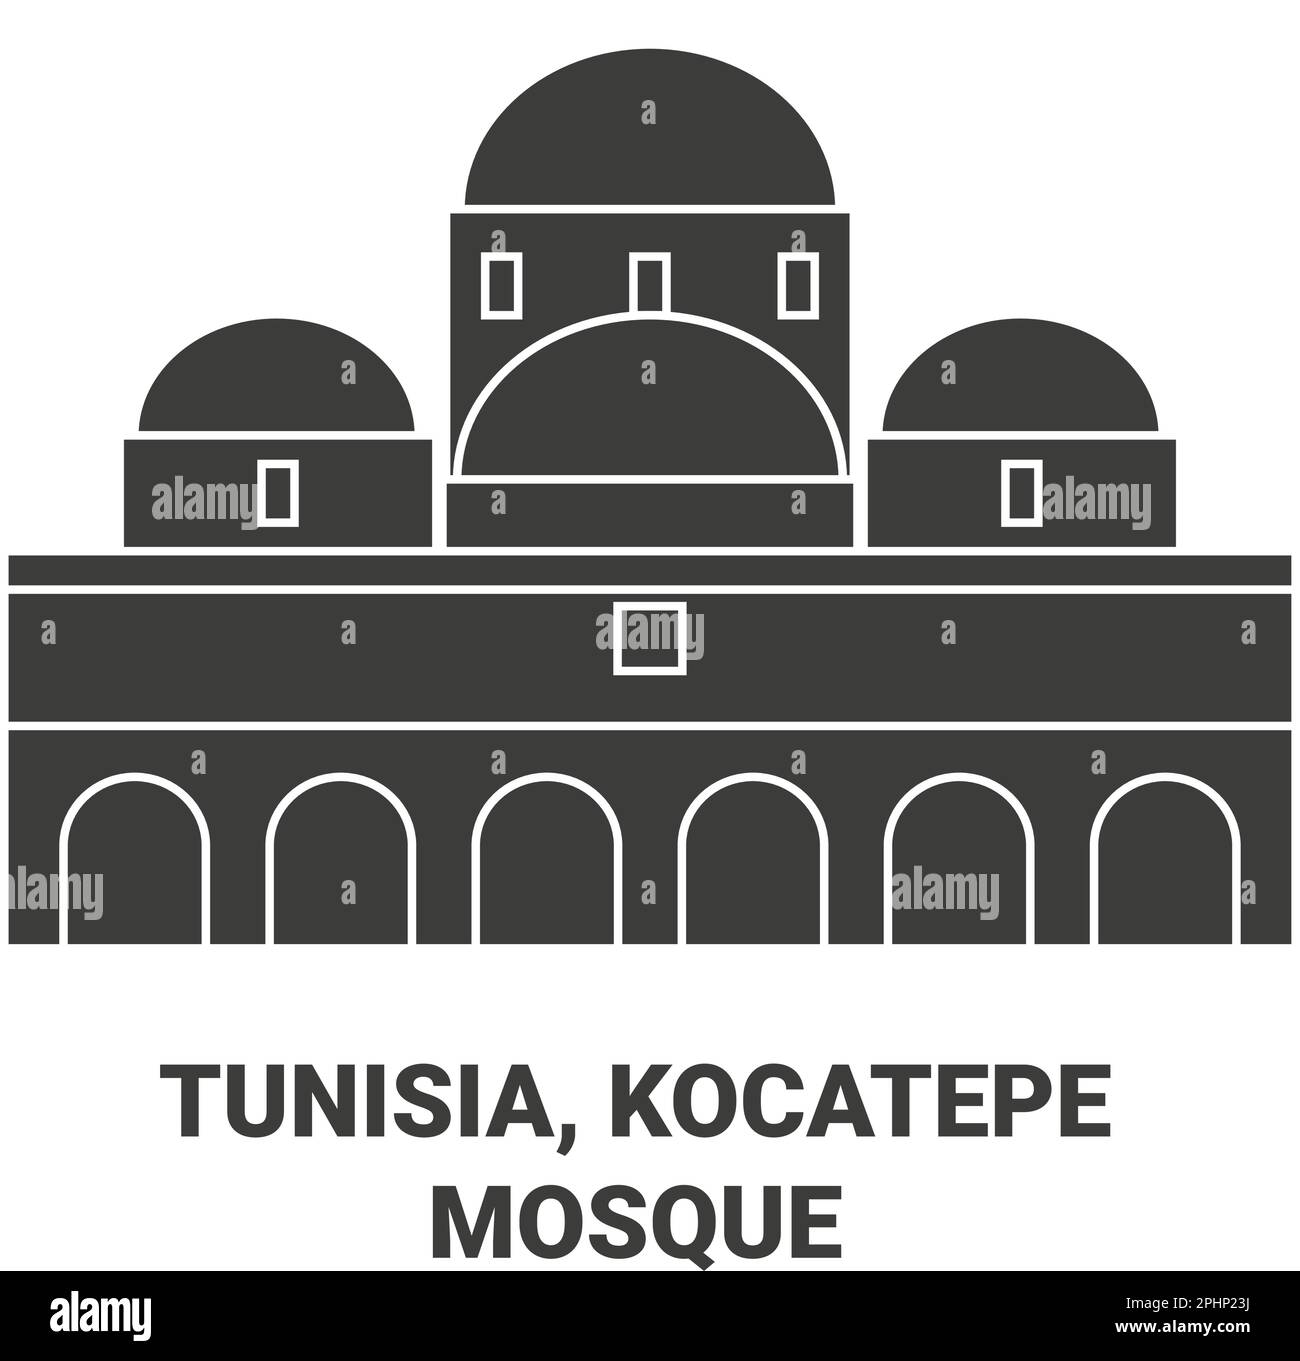 Tunisie, Mosquée Kocatepe, illustration vectorielle de voyage Illustration de Vecteur